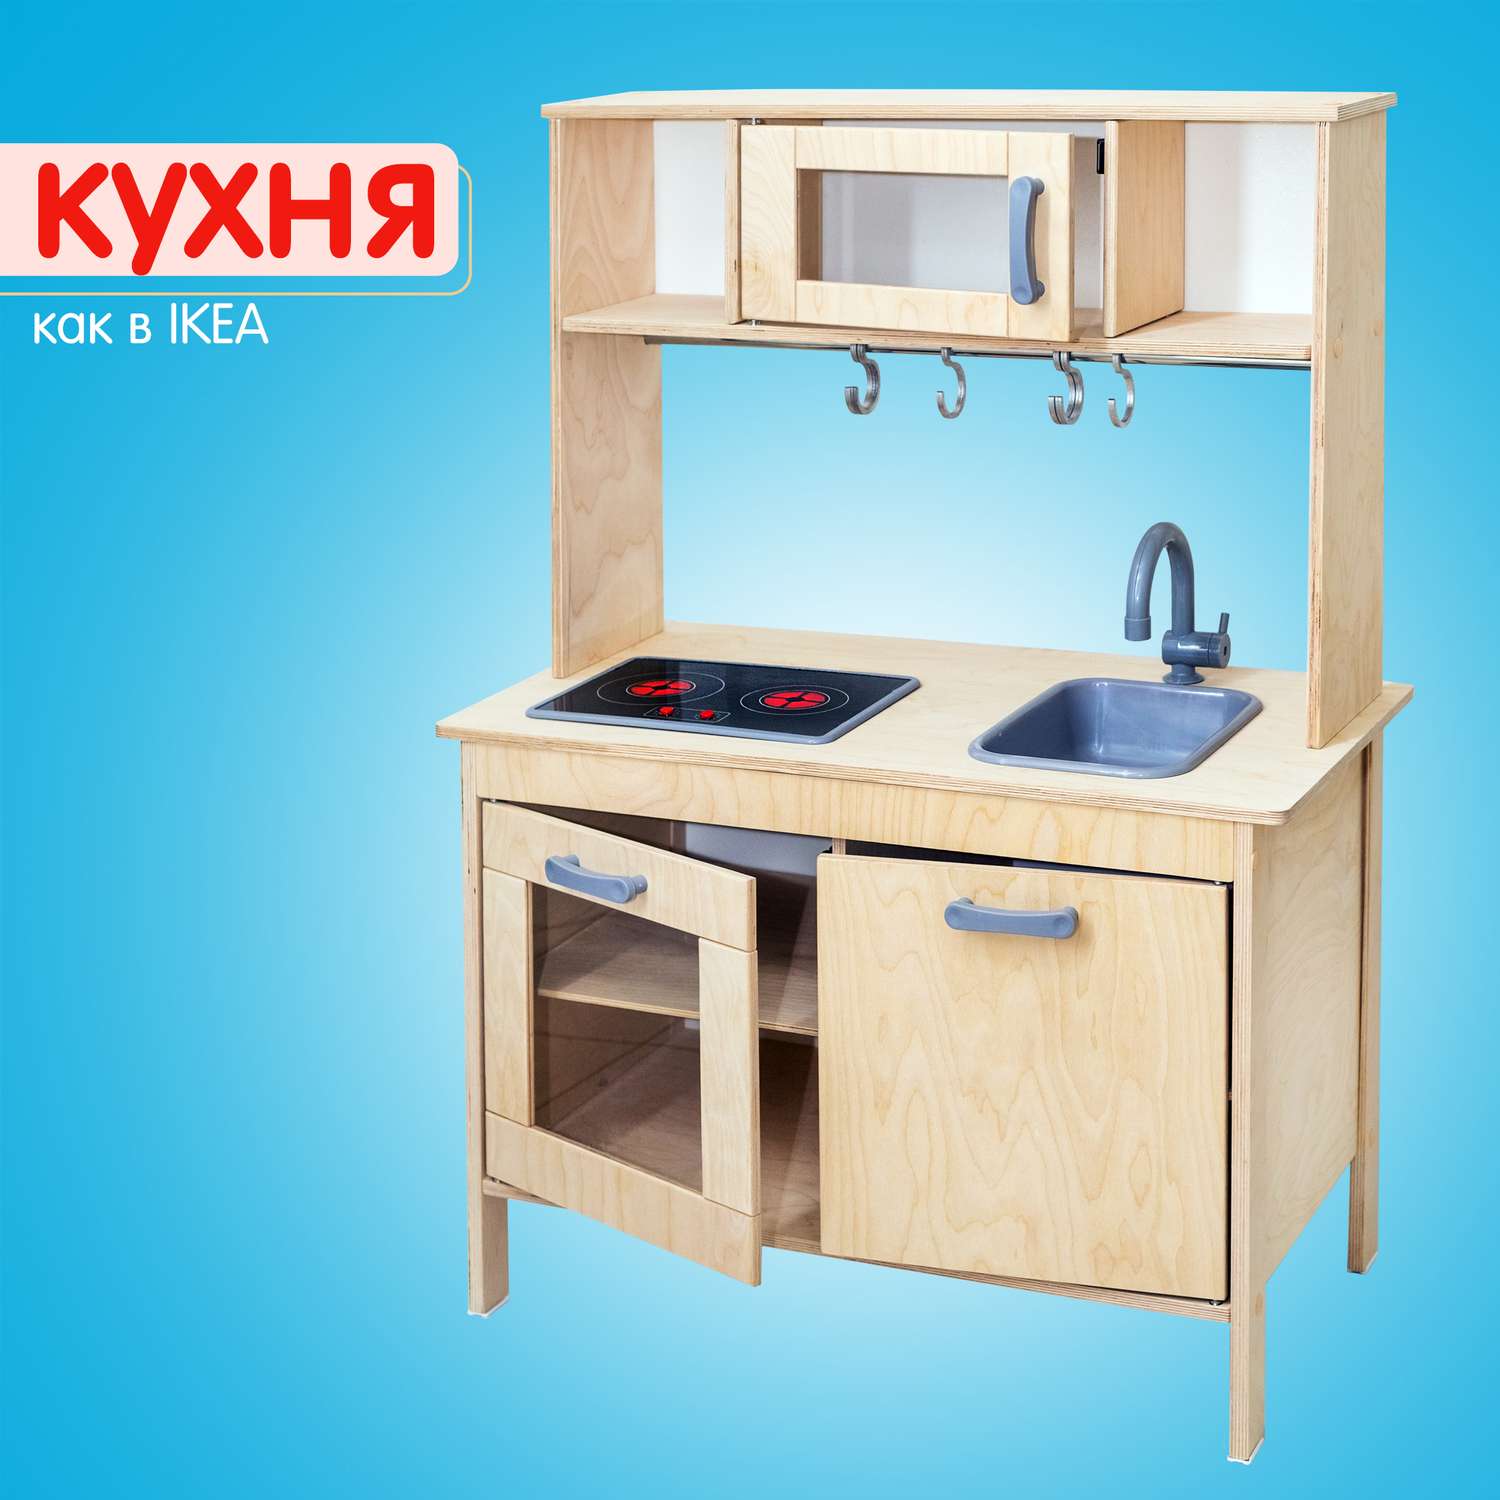 Детская кухня игровая - дерево Alatoys Сканди с плитой и краном развивающая для девочки - фото 2